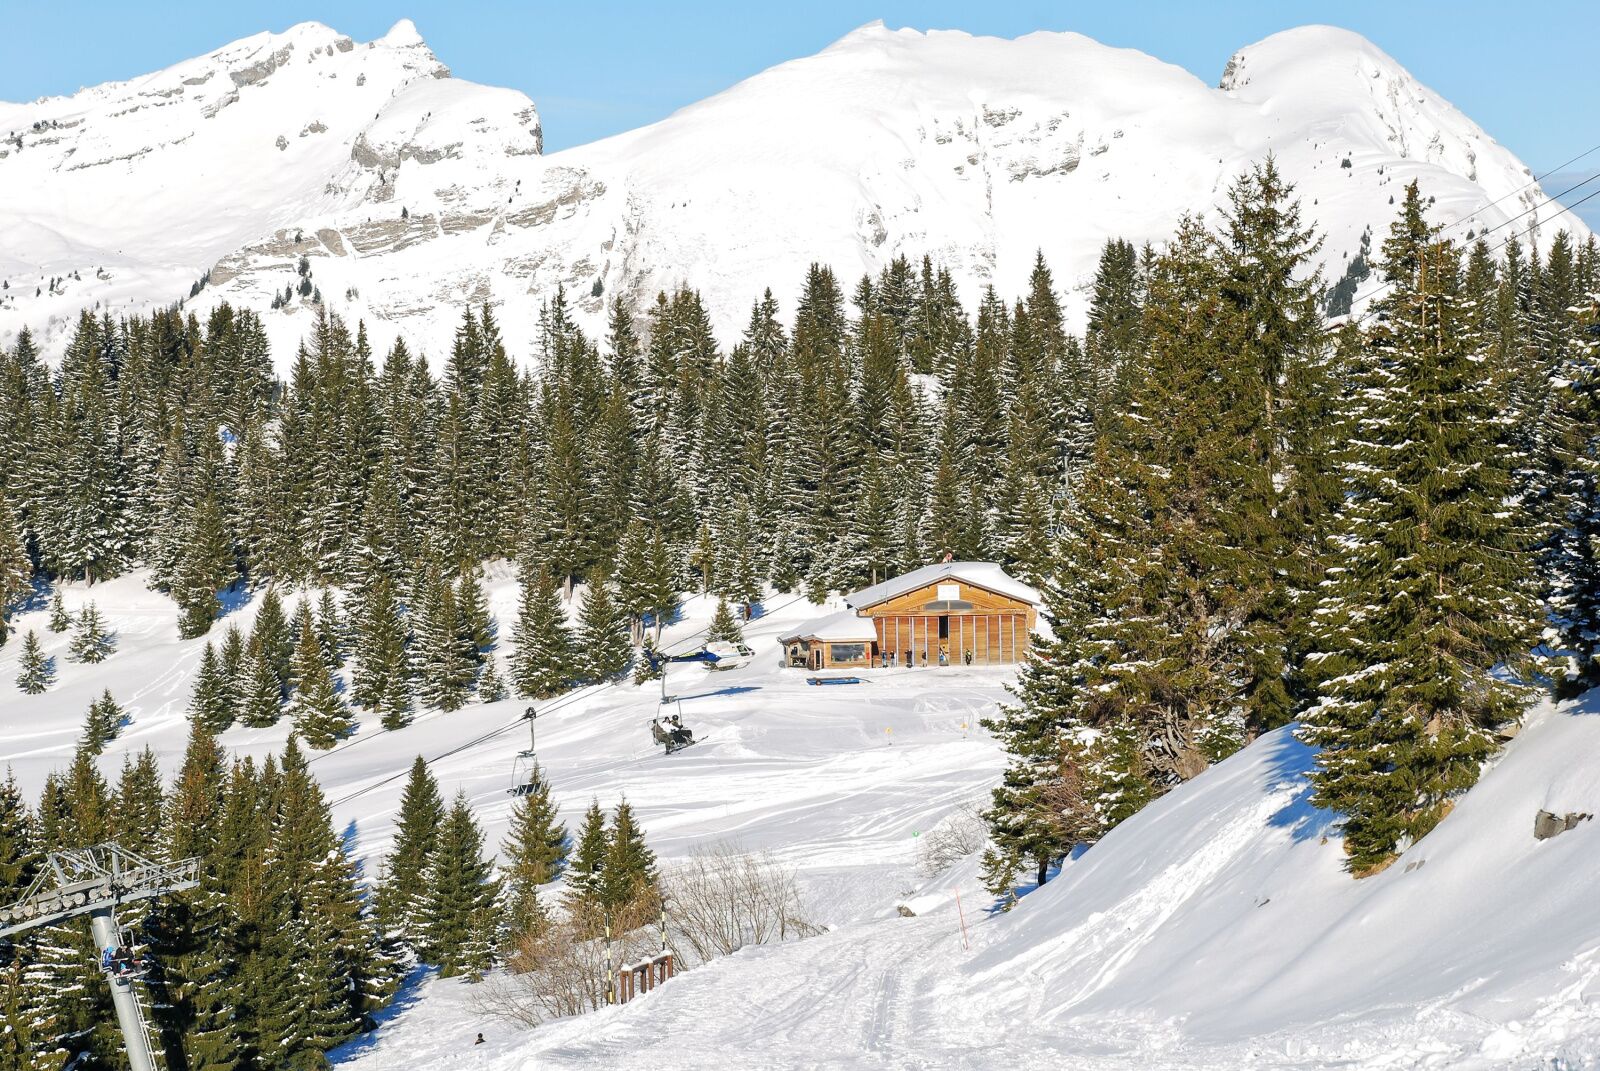 portes du soleil - skiing in switzerland 